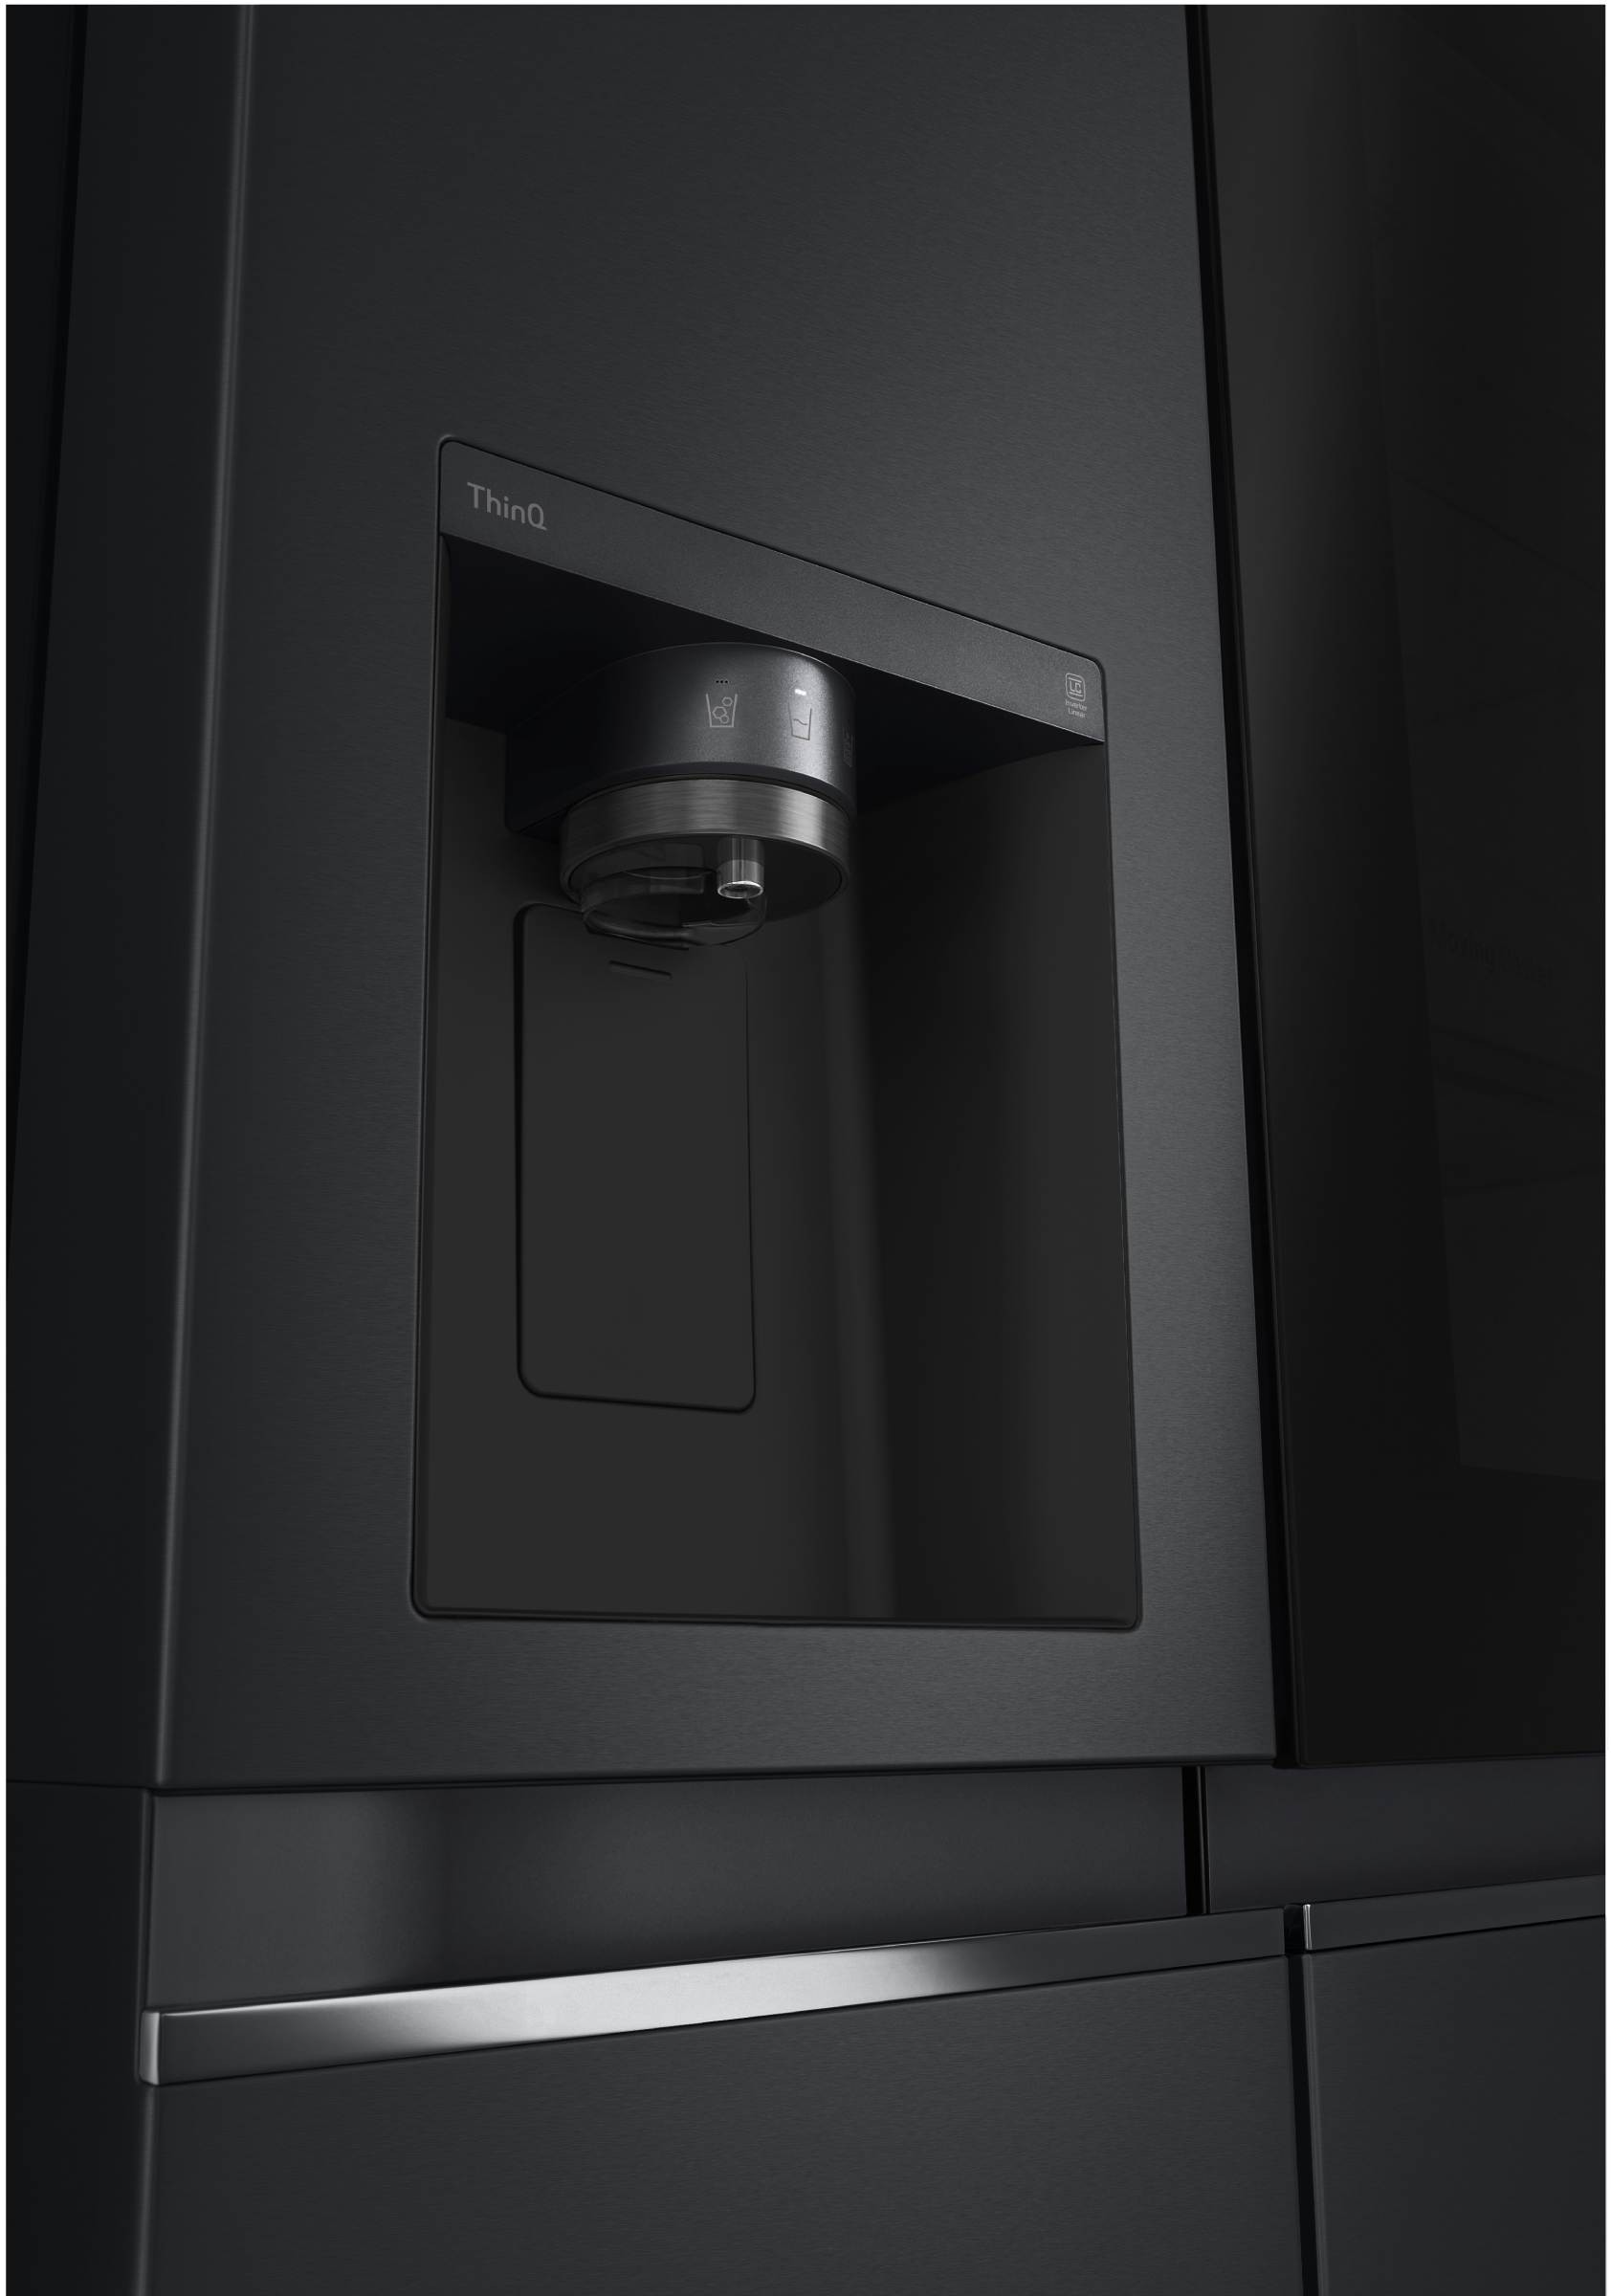 LG Réfrigérateur américain Instaview 635L Noir - GSGV80EPLD